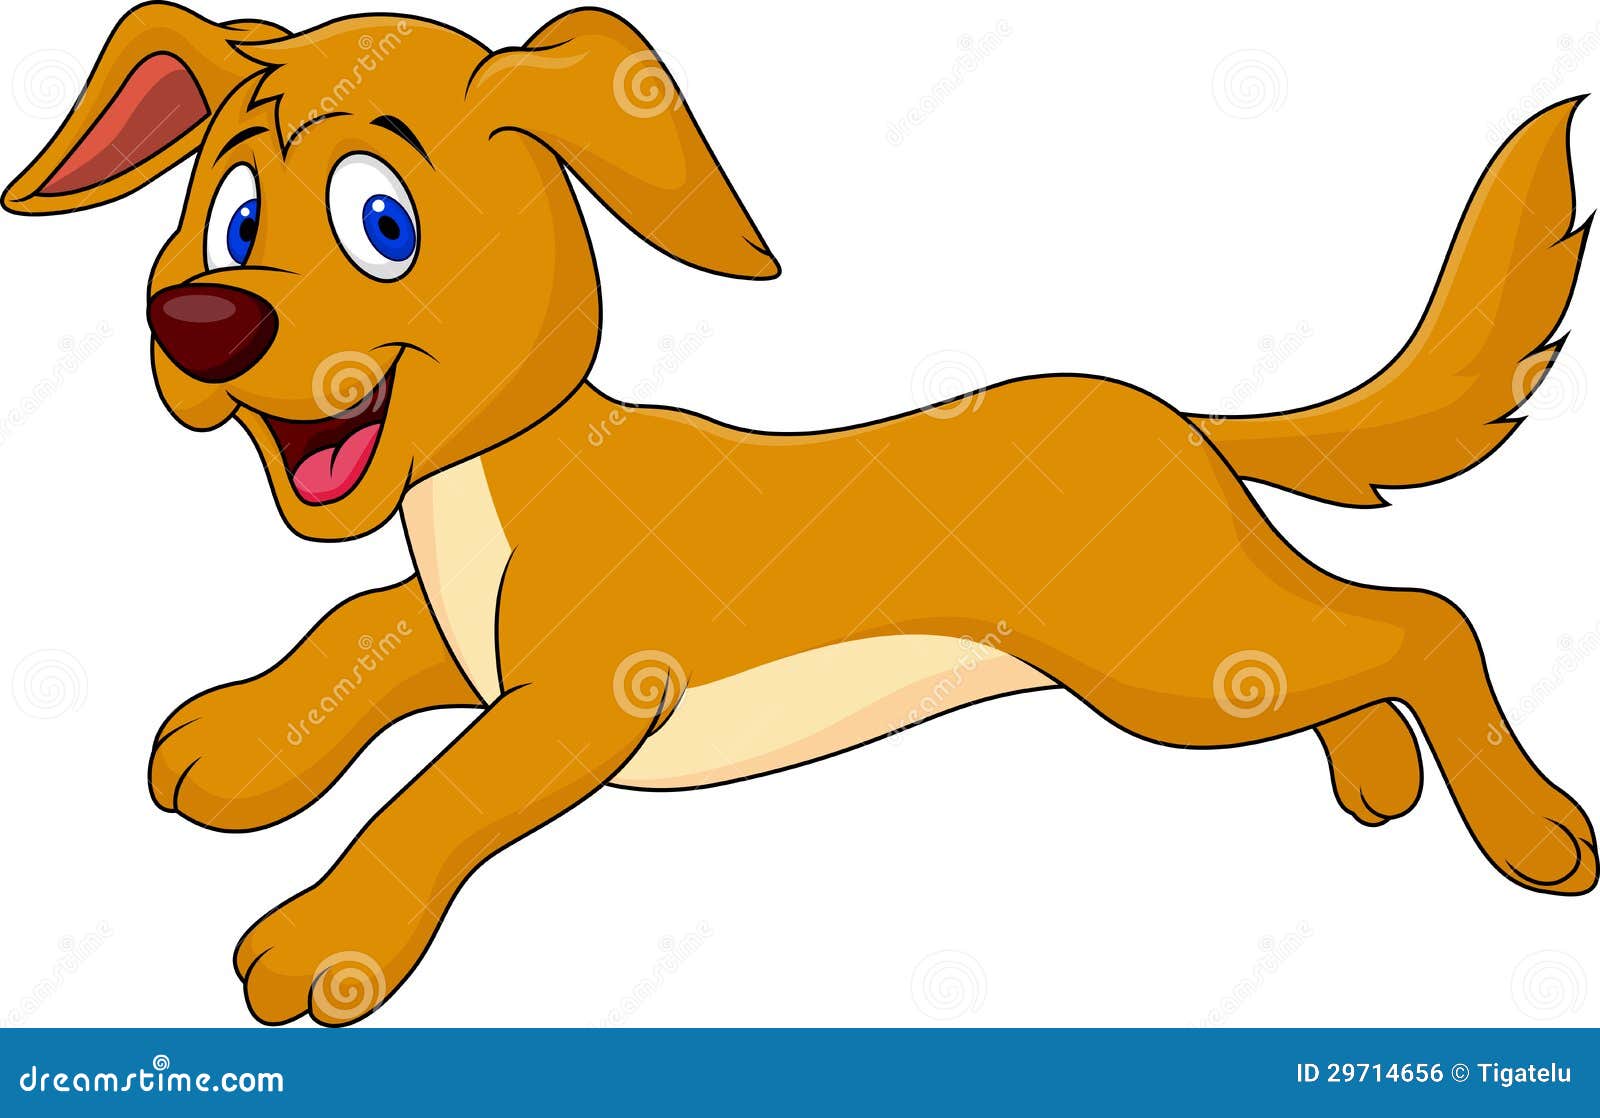 小狗奔跑可爱动物壁纸-动物壁纸-壁纸下载-美桌网